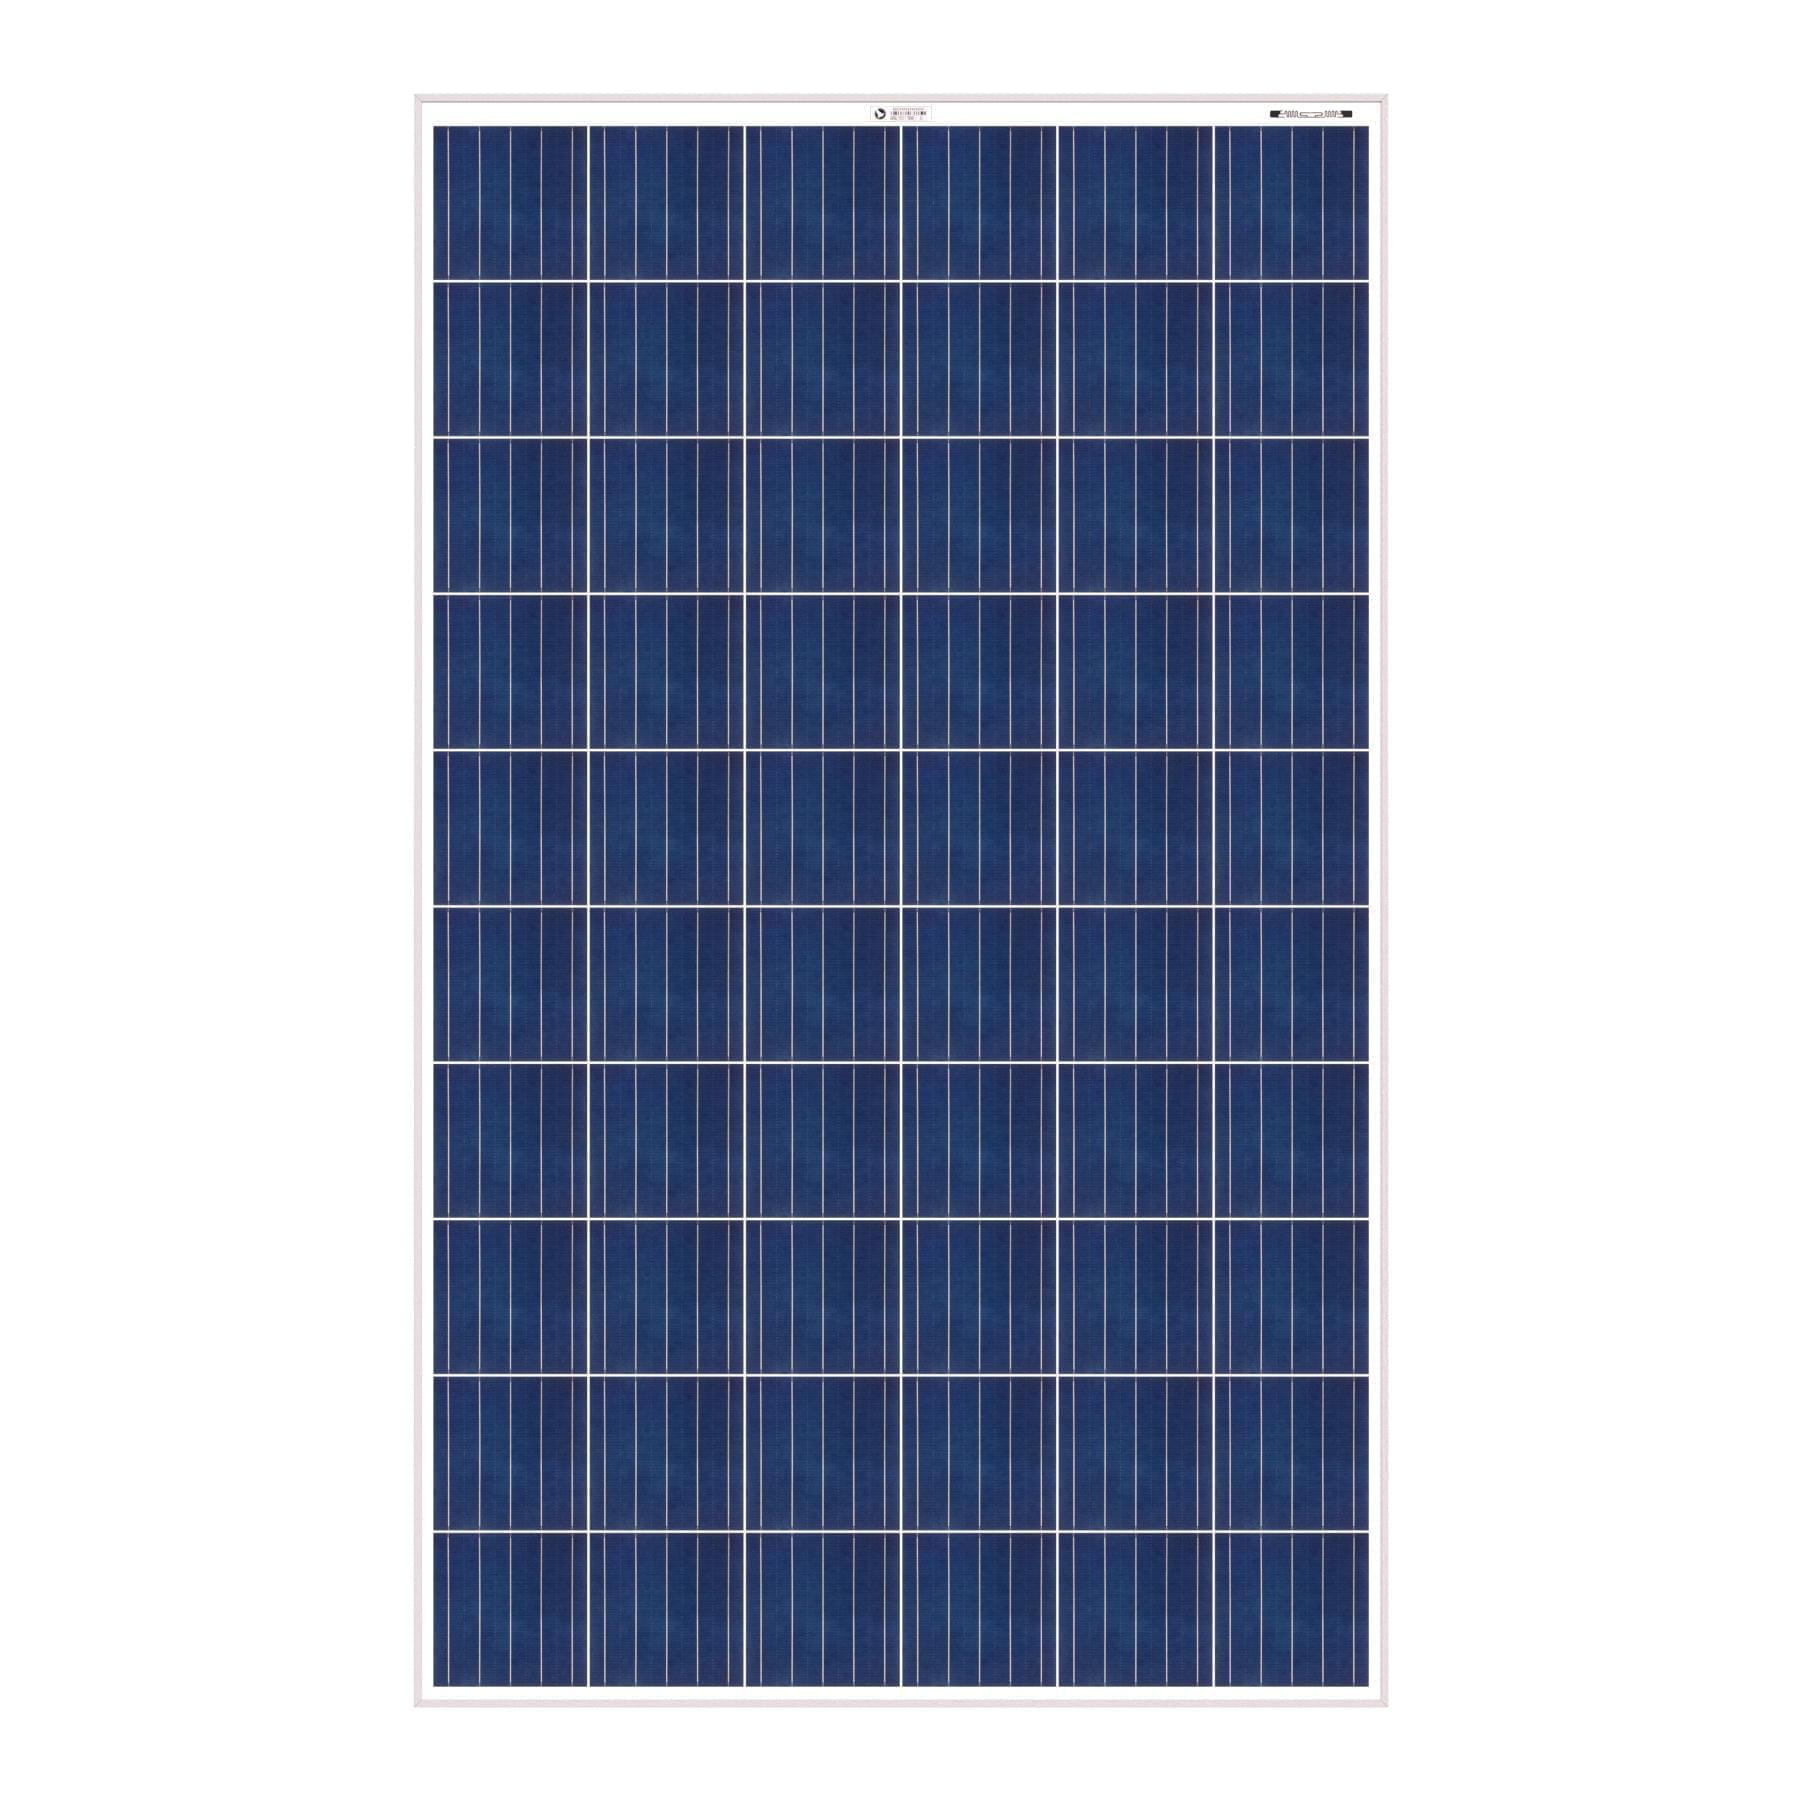 Bluebird 275 Watt 24 Volt Polycrystalline Solar Panel